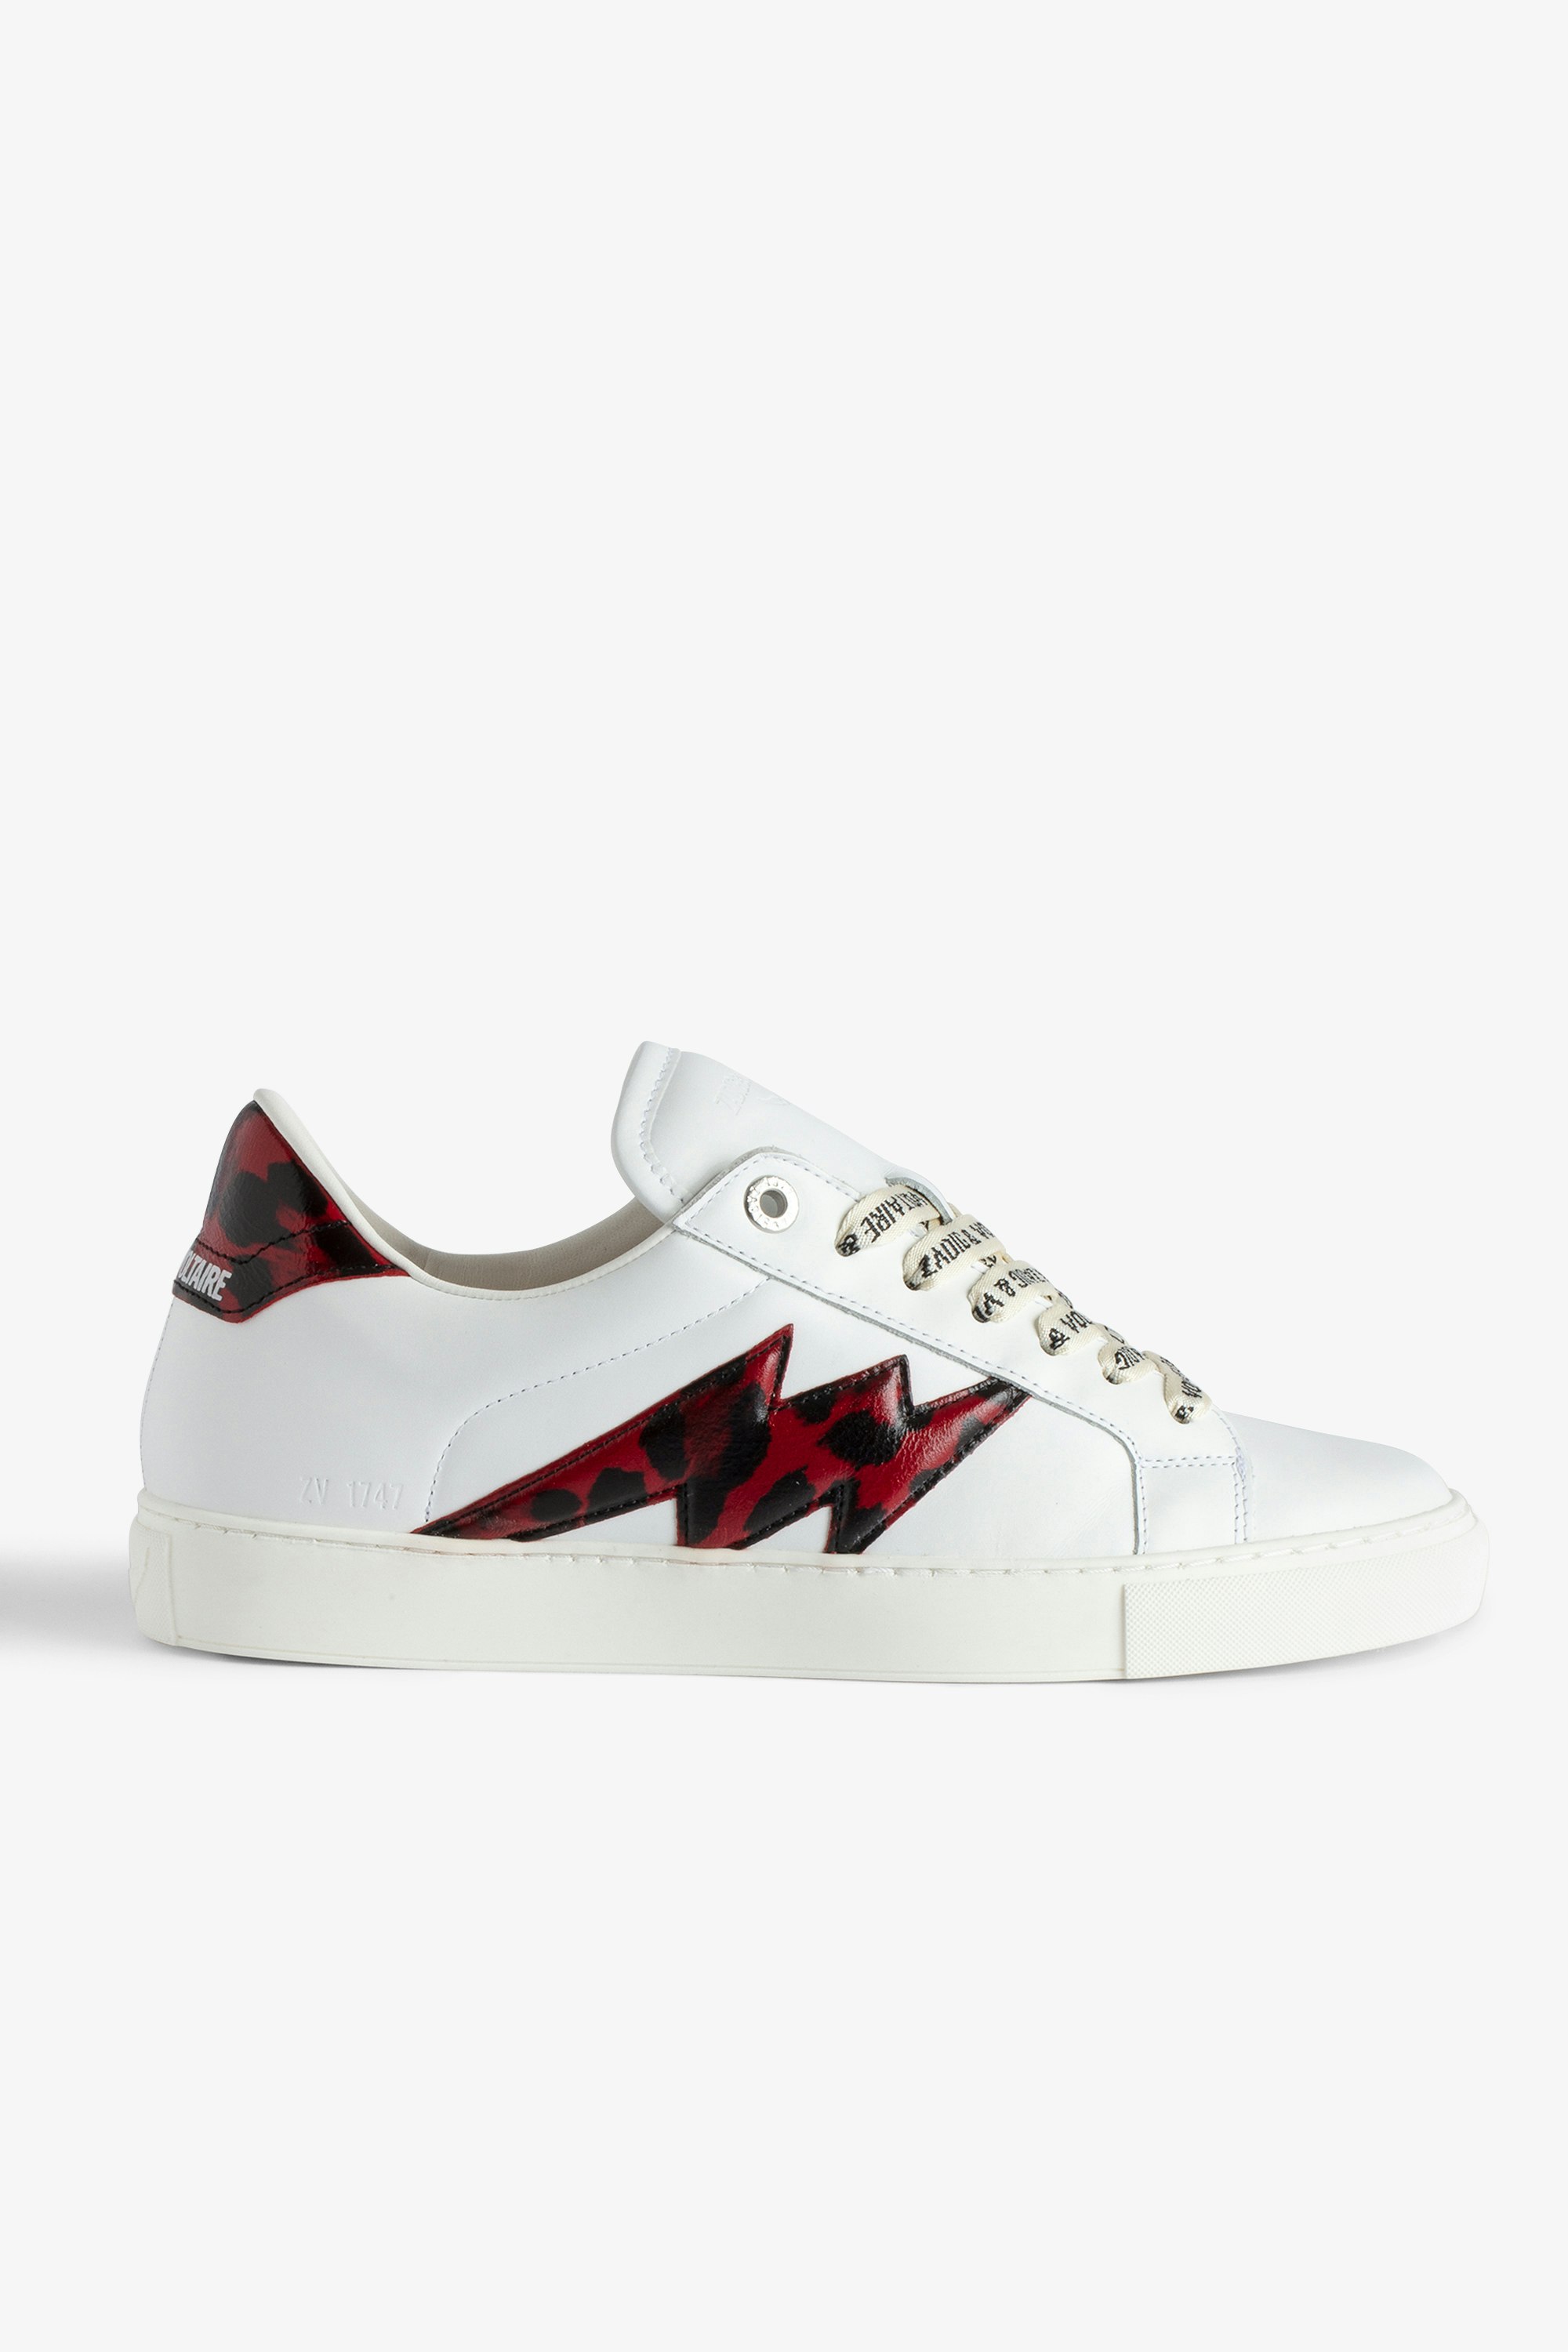 Sneakers Basses ZV1747 La Flash - Baskets basses en cuir lisse blanc à empiècements éclair et renfort rouge effet léopard.